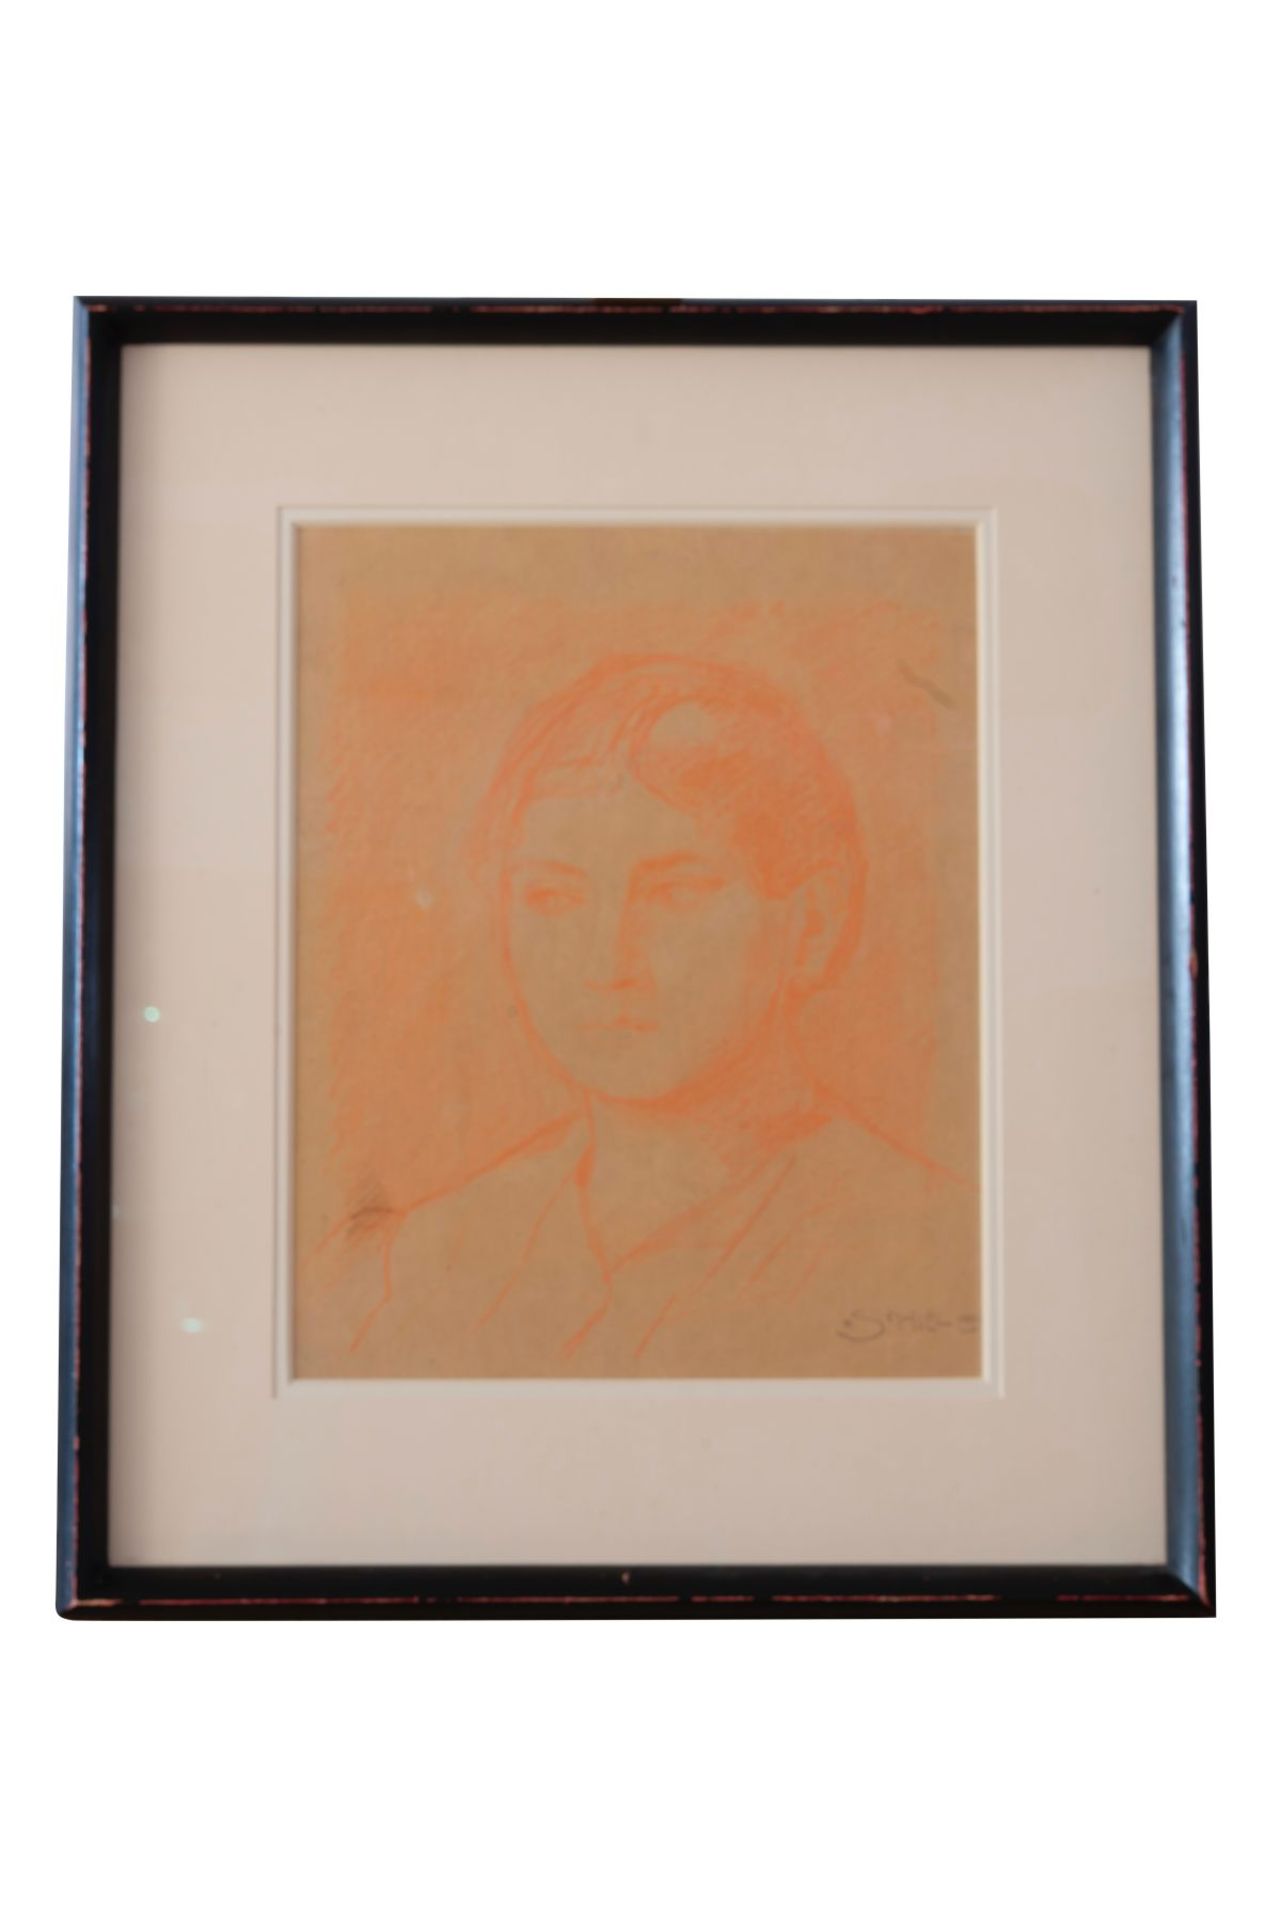 Egon Schiele "Rötelzeichnung" "Frauenporträt" signiert "Schiele" unten rechts, Rötelzeichnung auf